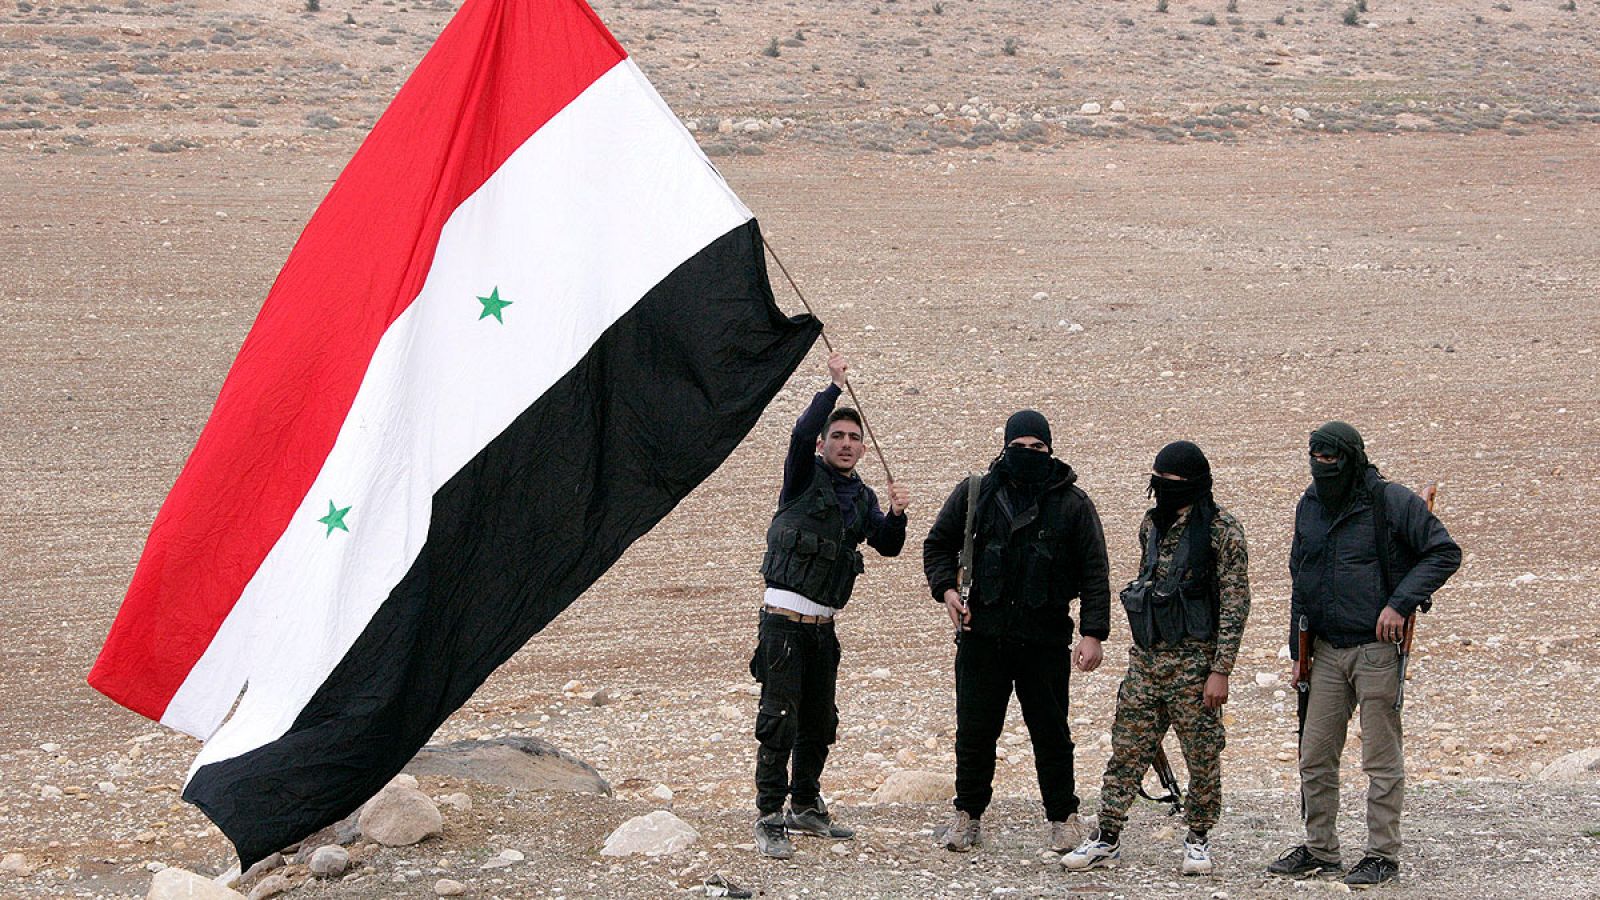 Hombres sirios armados ondean una bandera siria mientras esperan para registrar sus nombres y entregar sus armas a las autoridades